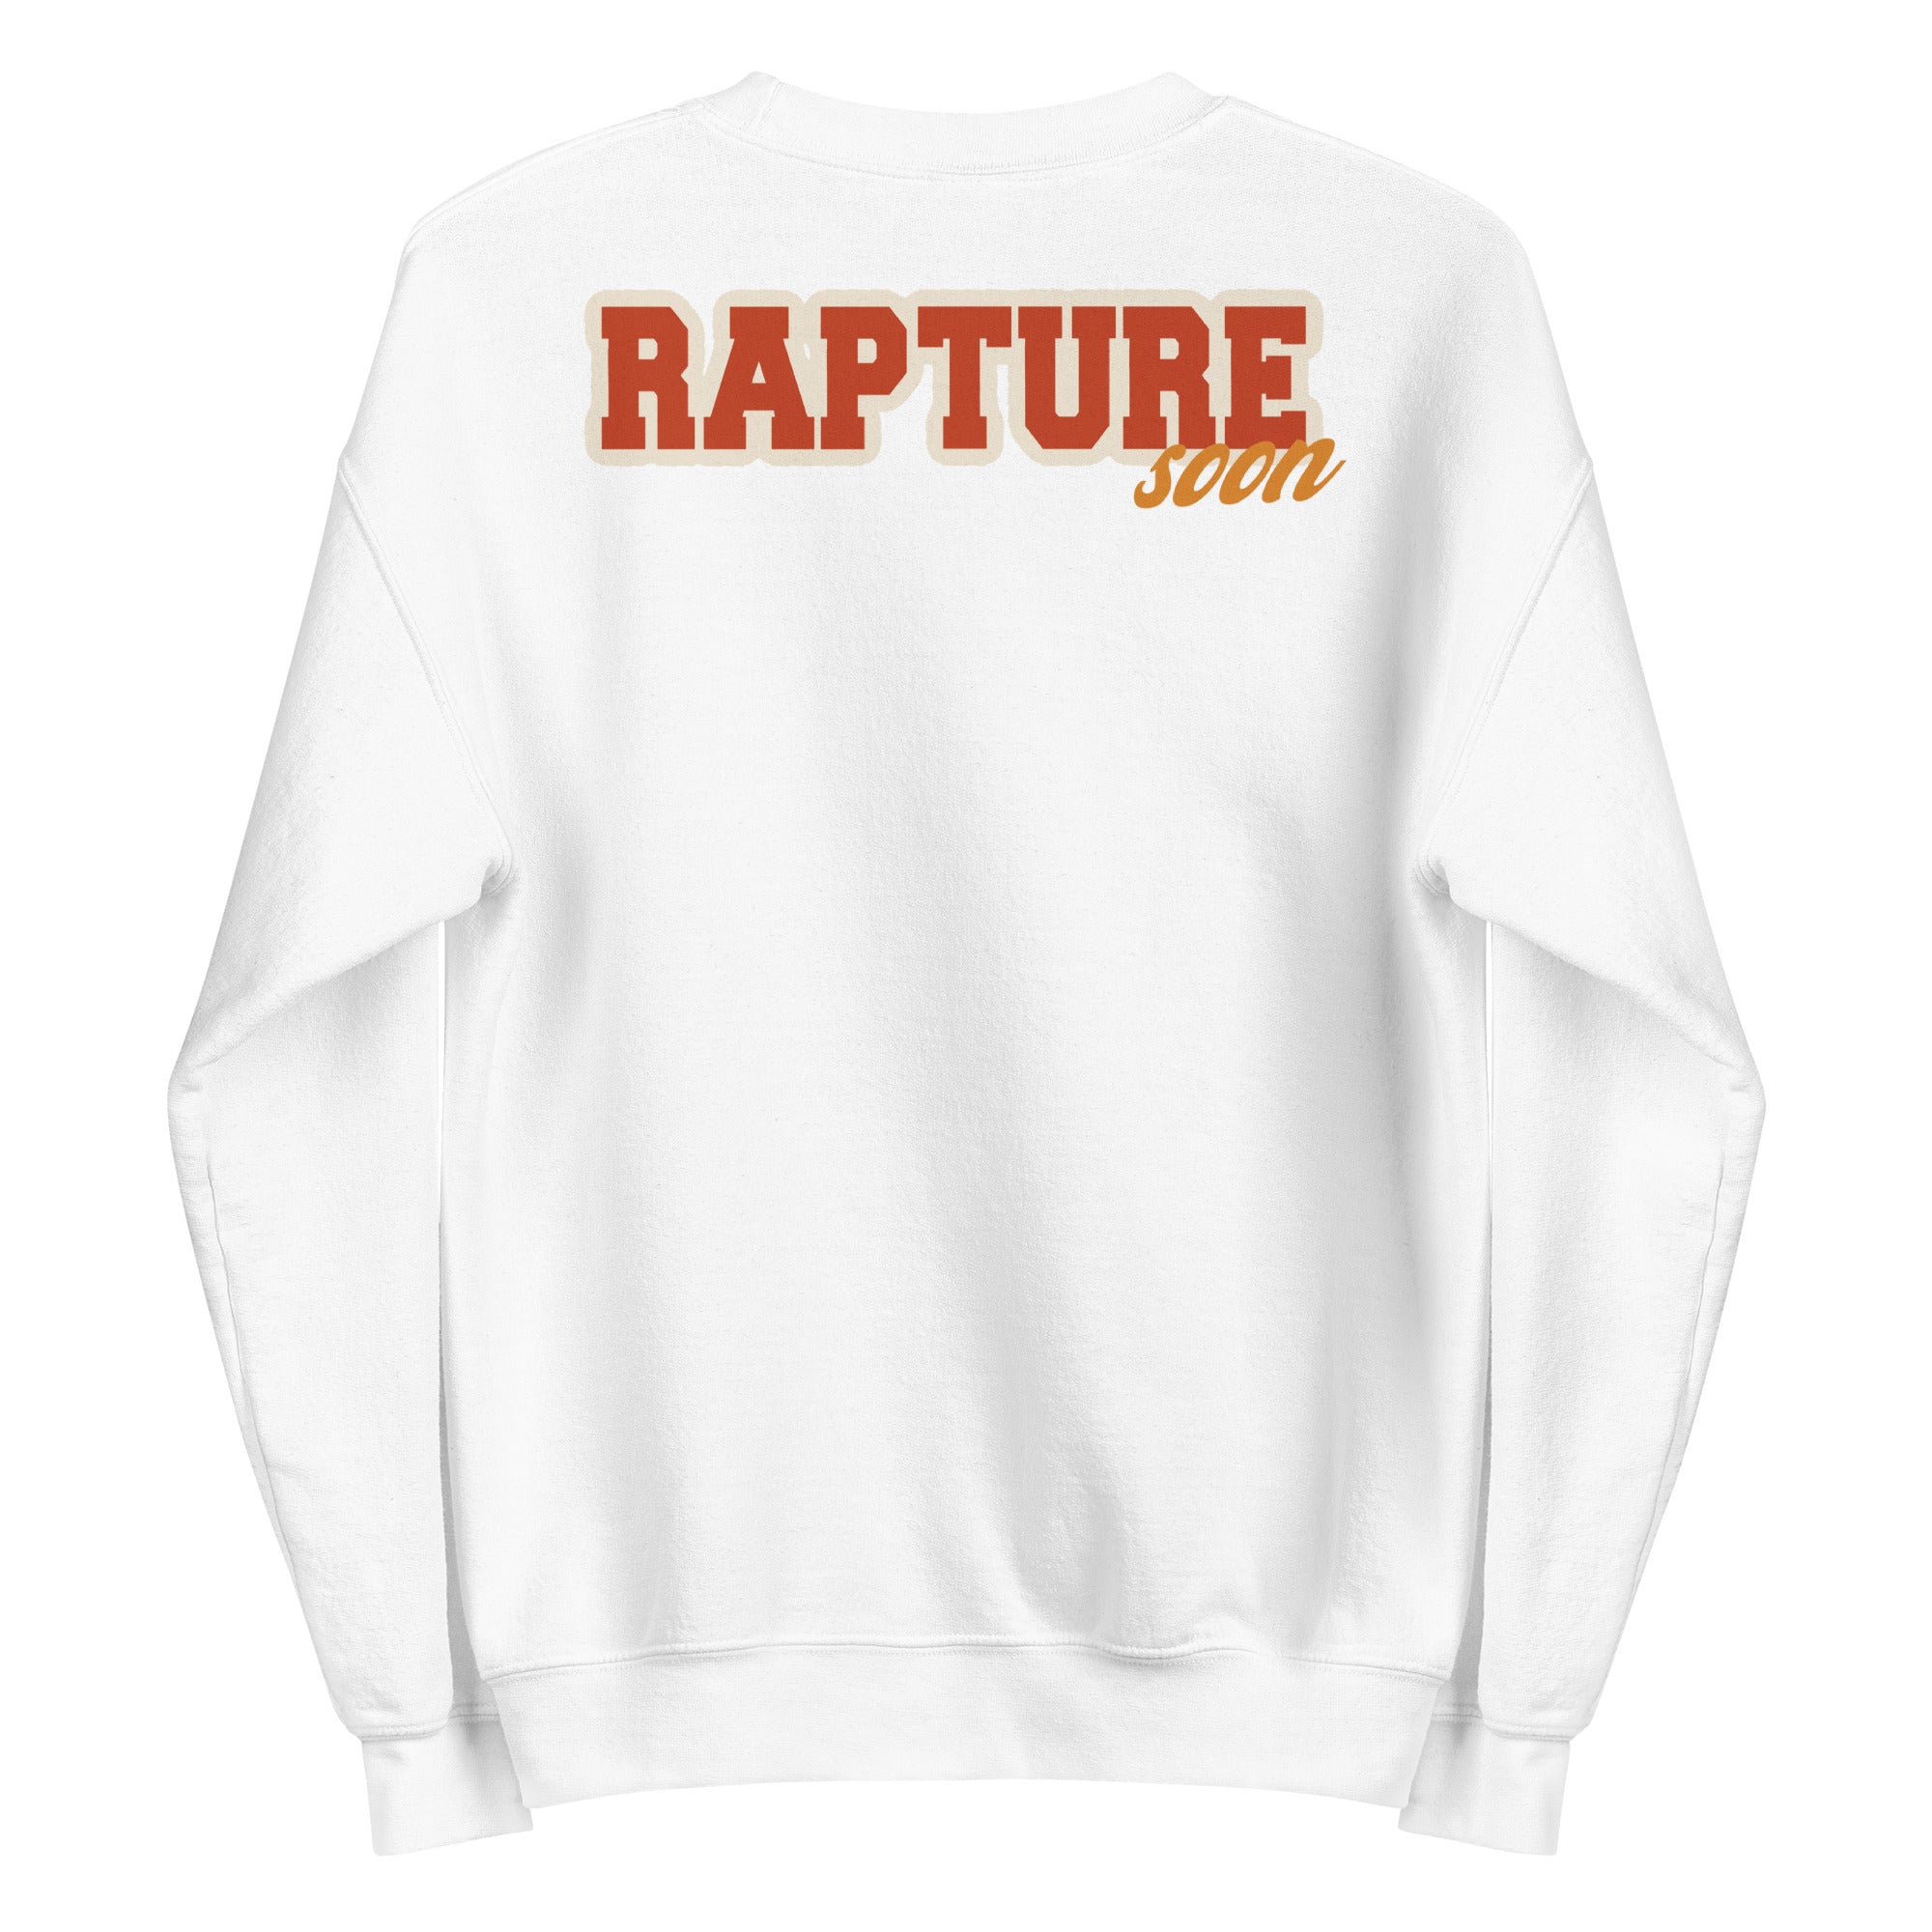 Rapture Soon Rainbow Unisex Sweatshirt